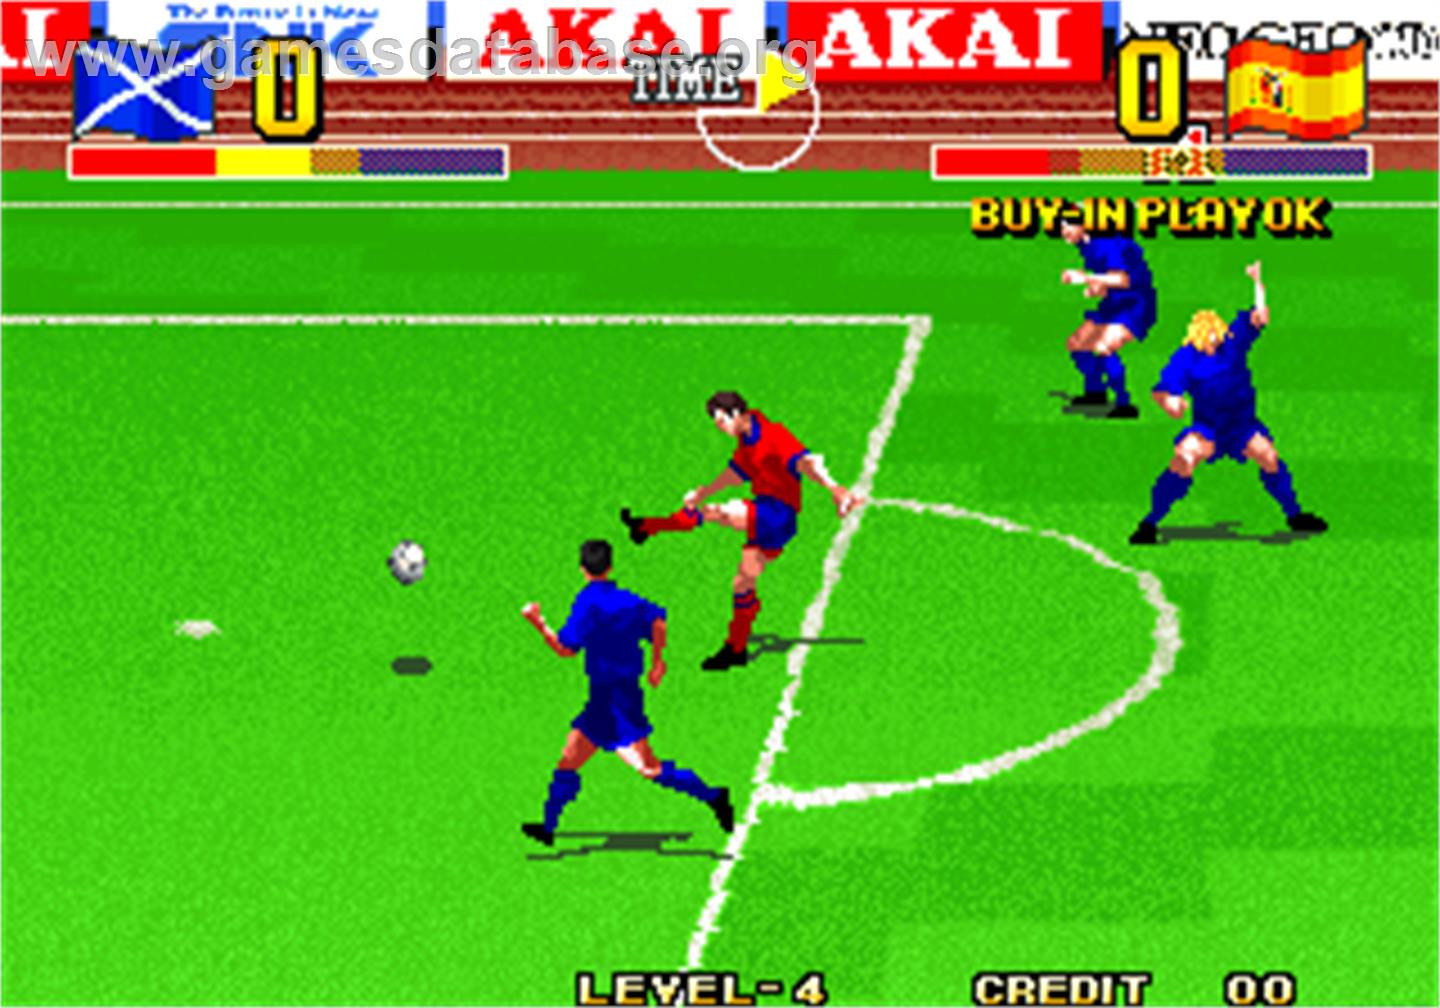 The Ultimate 11 - The SNK Football Championship / Tokuten Ou - Honoo no Libero - Arcade - Artwork - In Game